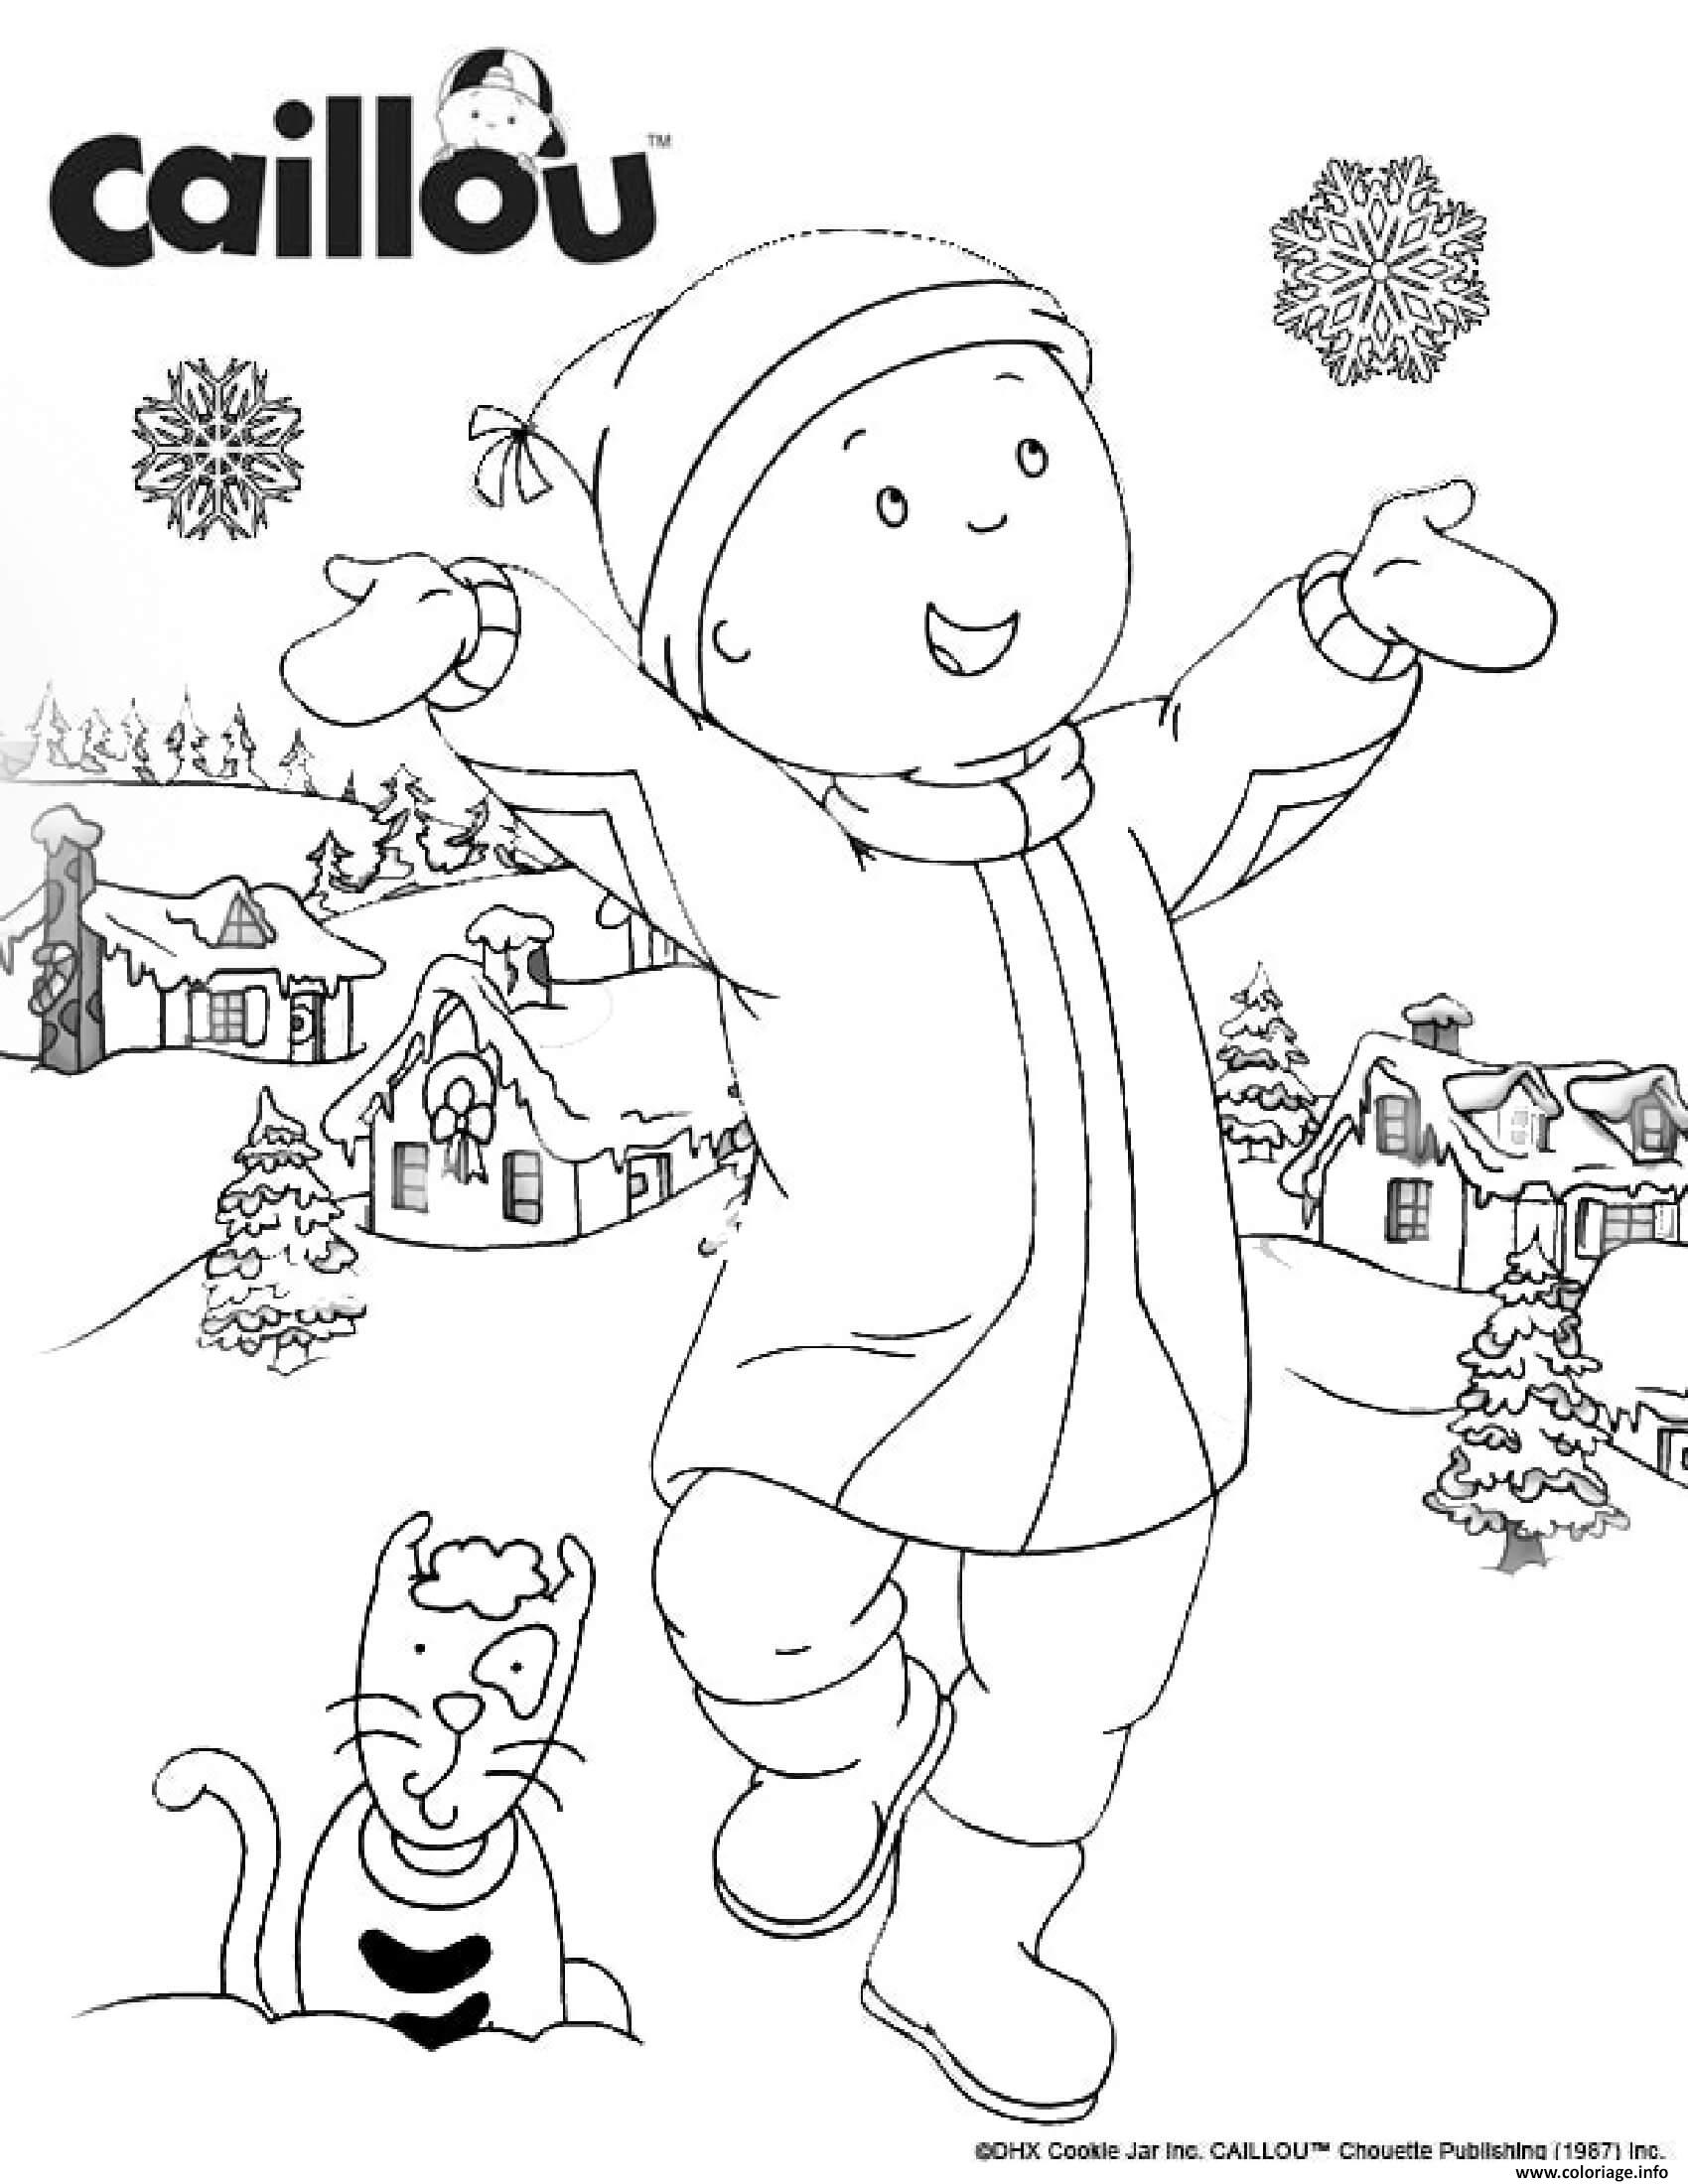 Dessin cest bientot noel avec le chat gilbert et caillou qui adorent les flocons de neiges Coloriage Gratuit à Imprimer